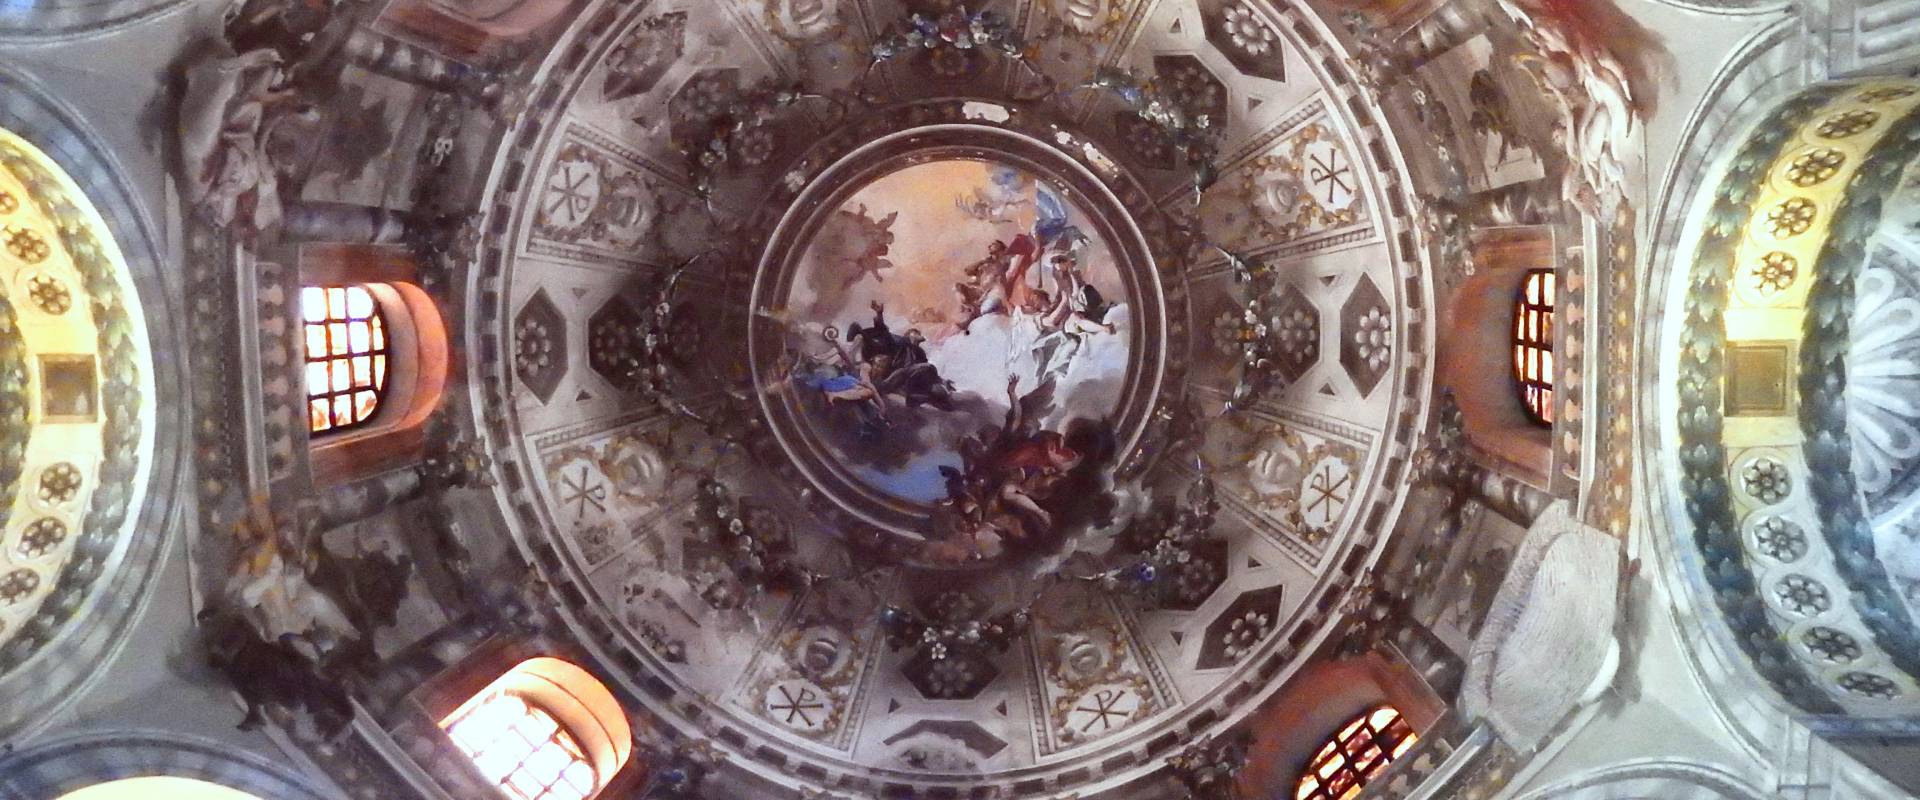 La cupola barocca foto di Sofia Pan